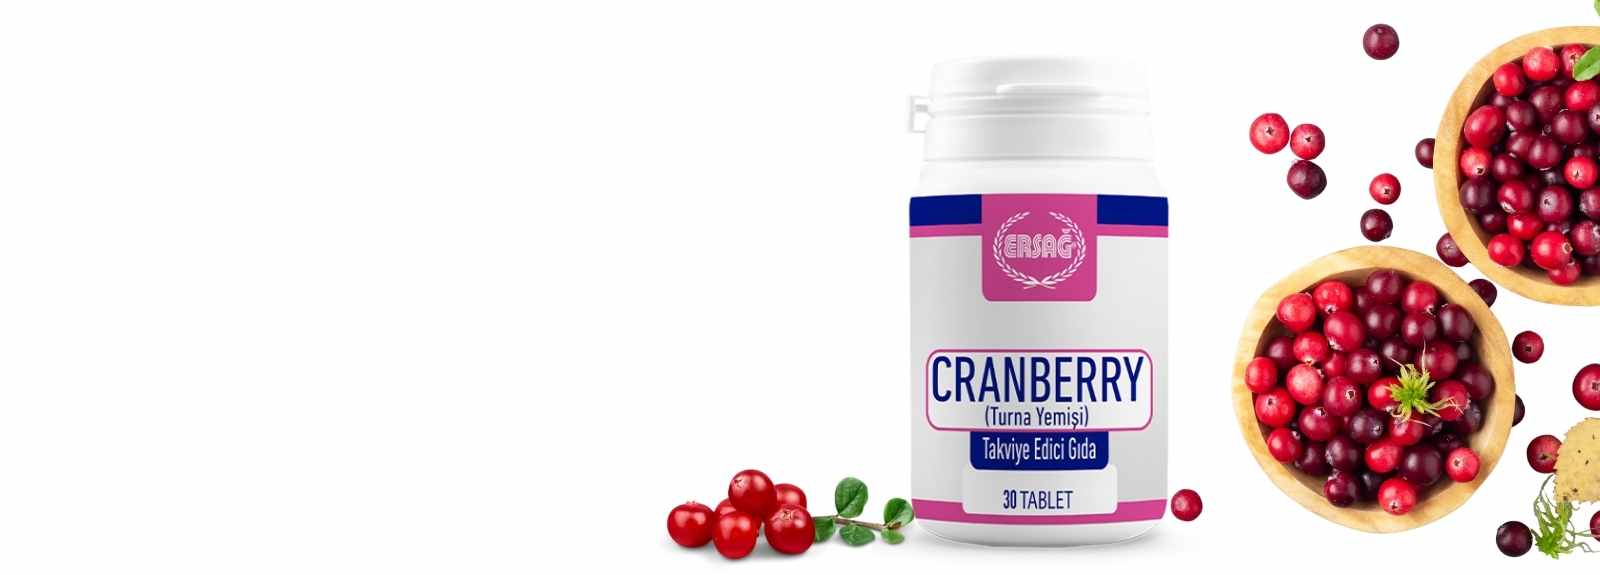 Ersağ'ın sunduğu Cranberry (Turna Yemişi) takviyesi, sağlığınızı doğal yollarla desteklemek için mükemmel bir seçenektir. Turna yemişi, bilimsel araştırmalarda idrar yolu enfeksiyonlarına karşı koruyucu etkileriyle tanınır. Güçlü antioksidan kaynağı olan cranberry, vücudunuzun serbest radikallere karşı savaşmasına yardımcı olur ve genel bağışıklık sisteminizi güçlendirir.